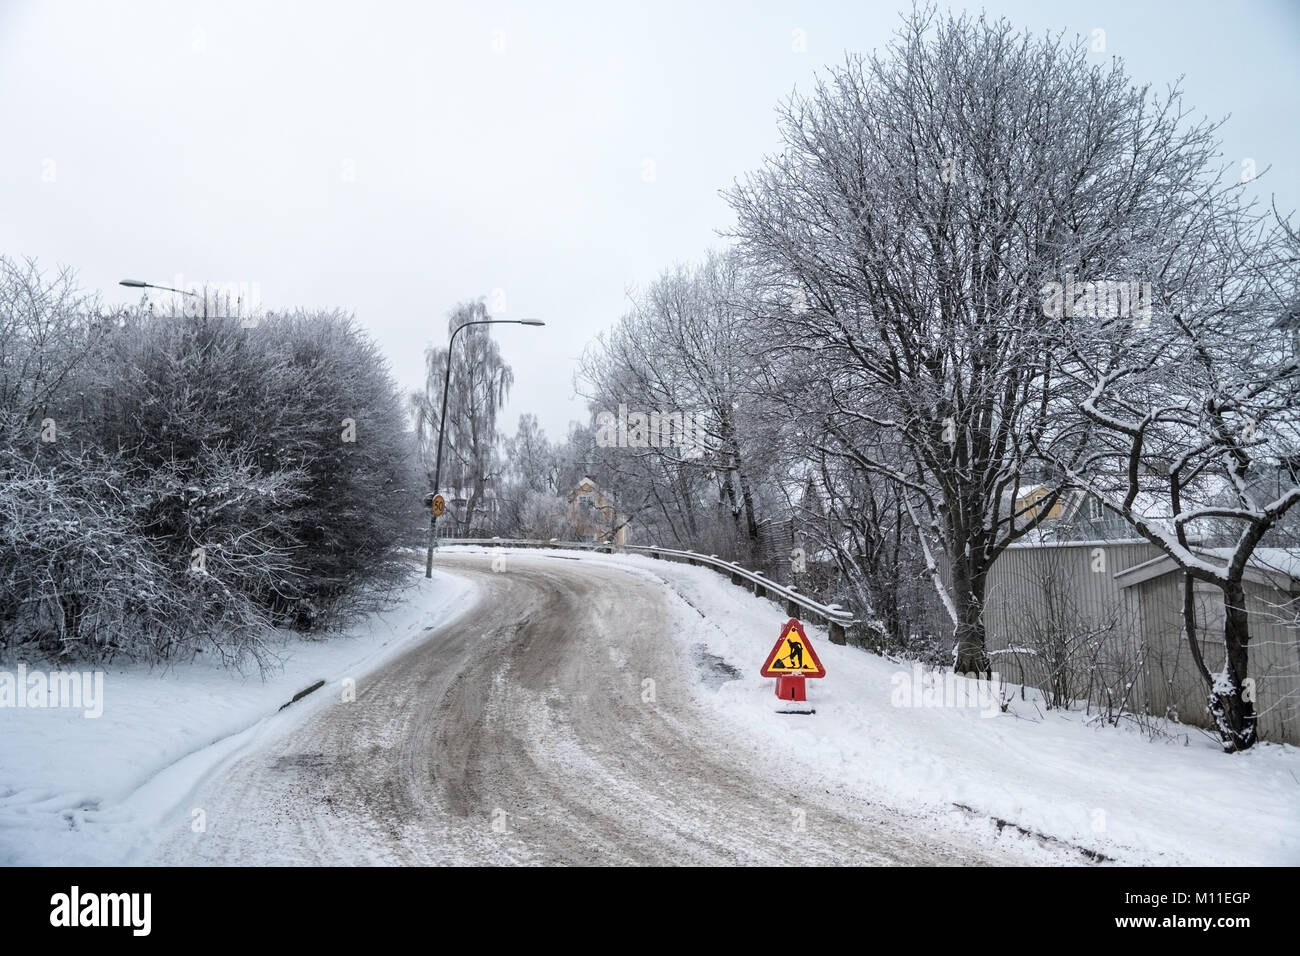 Im Bau Schild an einem Wintertag in einer Stadt. Schnee und gefrorenen Bäume und in der Nähe Häuser in einem Wohngebiet in Schweden Stockfoto